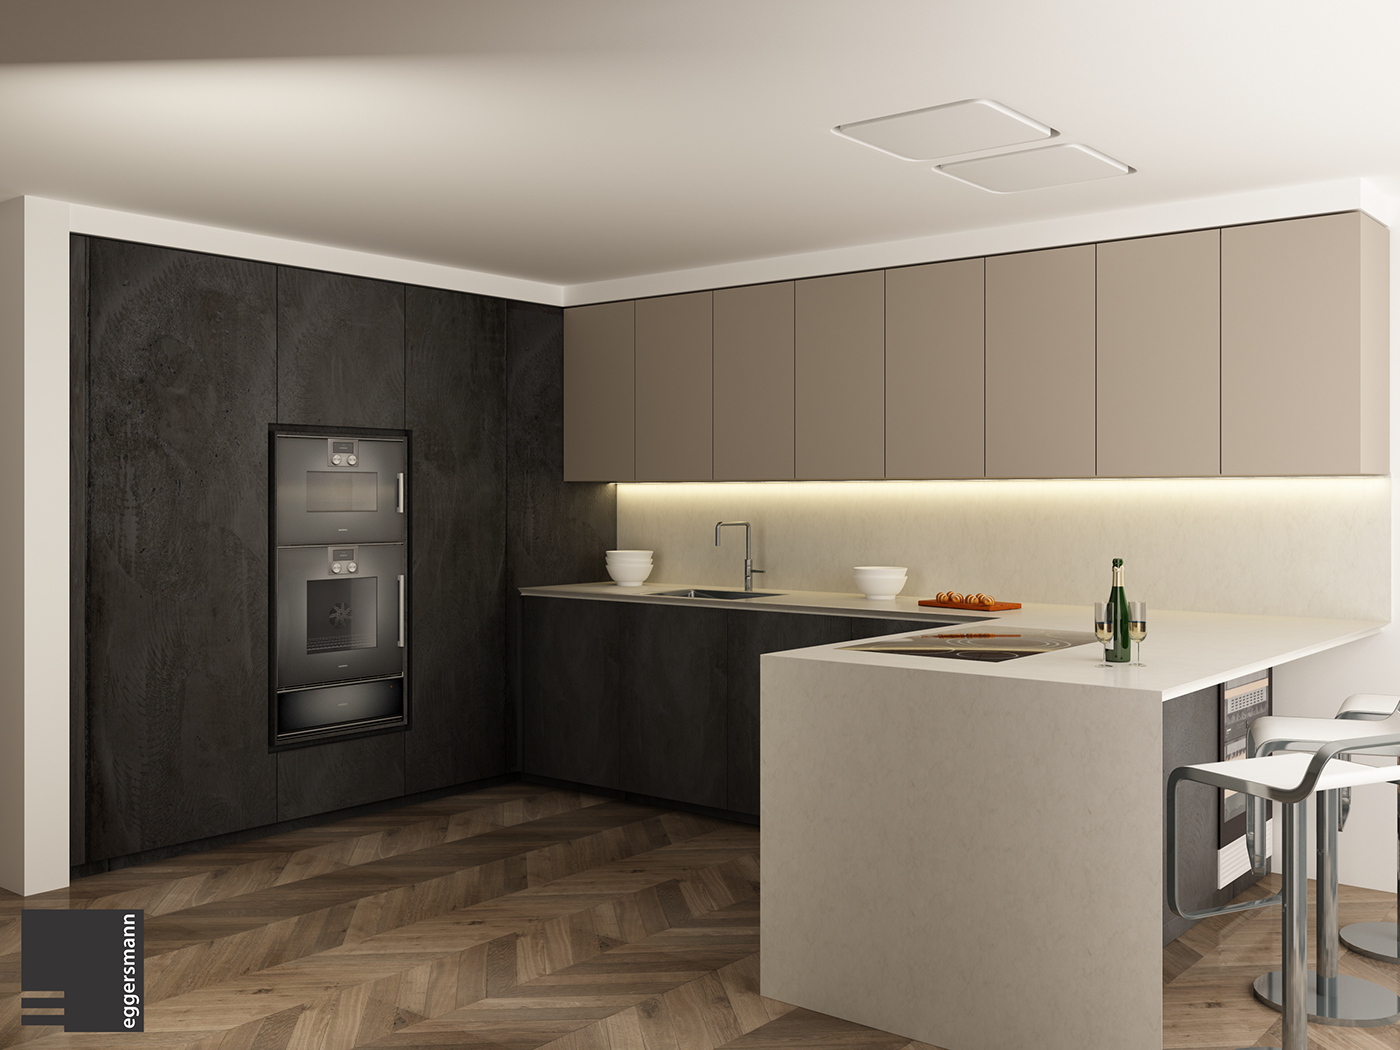 kitchen Render 3D Visualization interior design  kitchen design rendering CGI architecture 3D model VisEngine